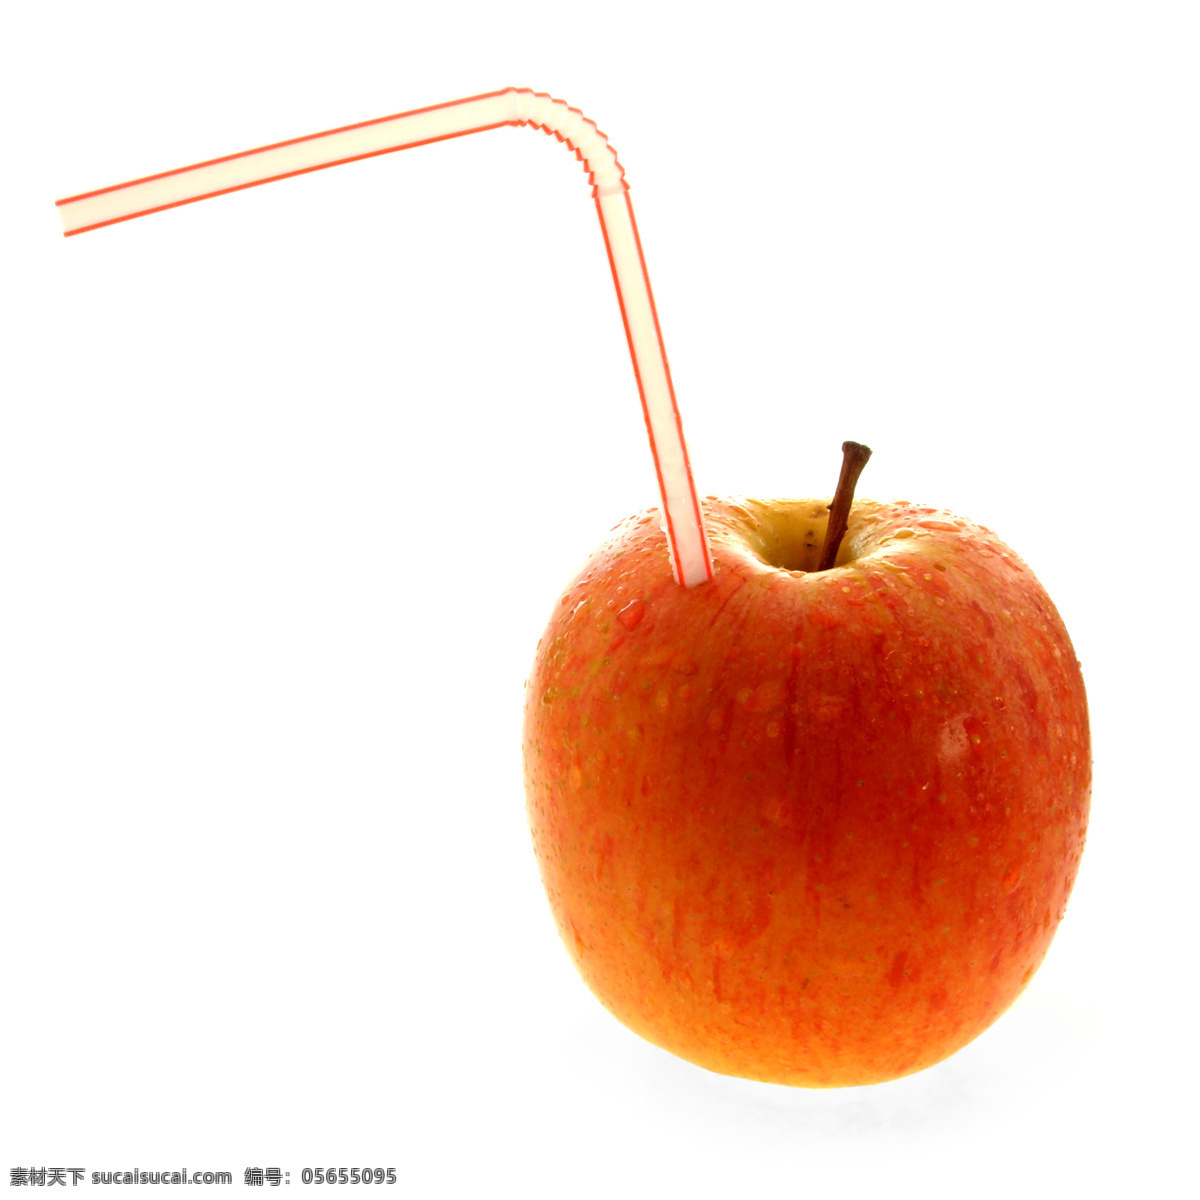 苹果创意摄影 苹果 水果 创意 吸管 白背景 生物世界